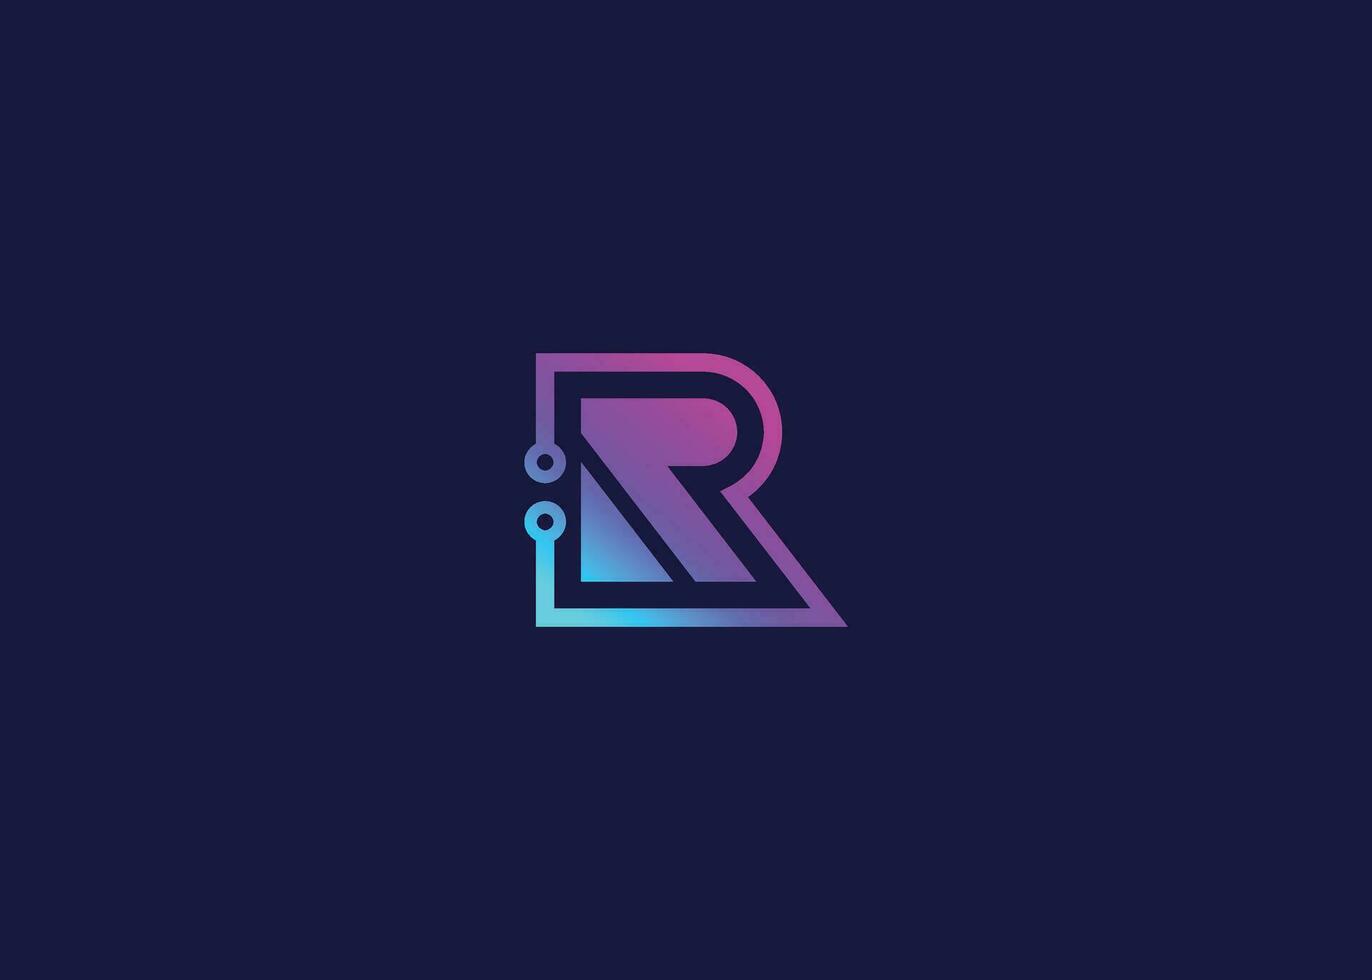 lettera r tecnologia vettore monogramma logo design modello. lettera r molecola, scienza e bio tecnologia vettore logo